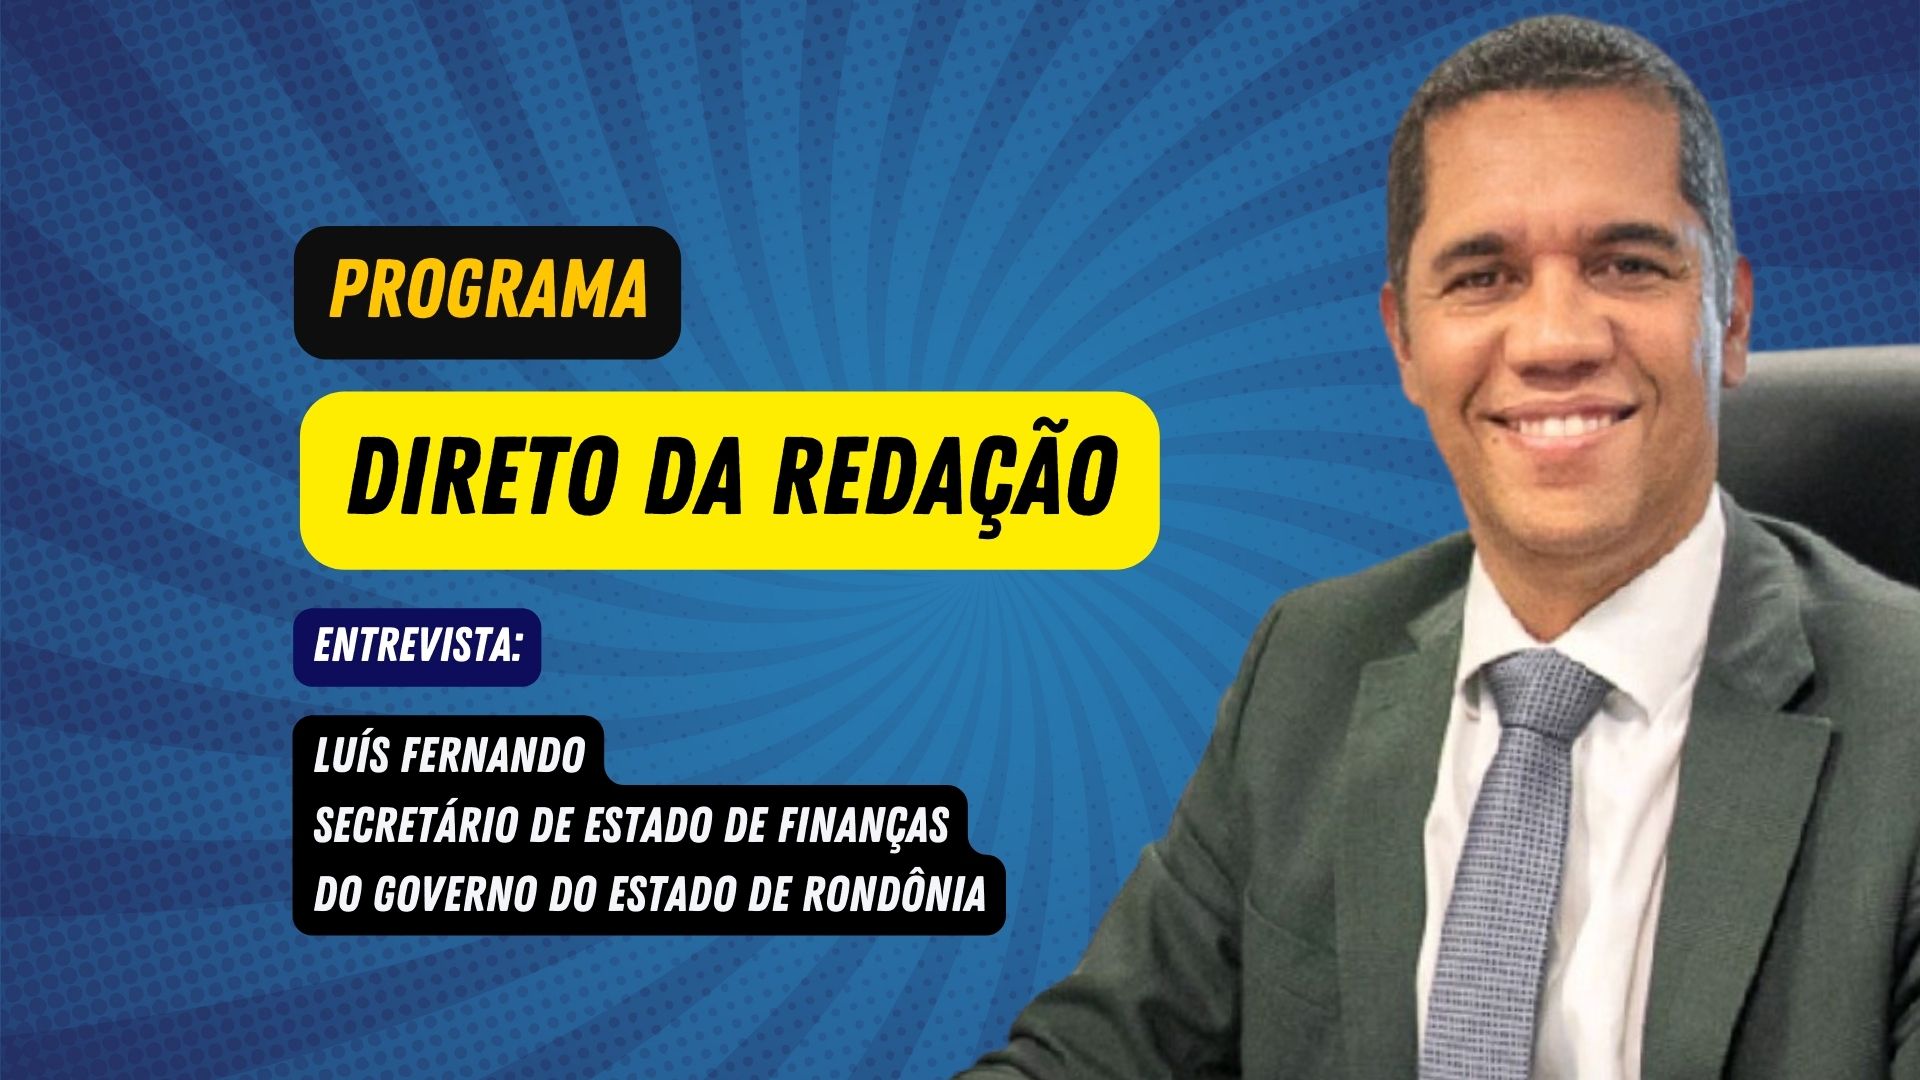 Programa Direto da Redação entrevista: Luís Fernando - Sec. de Finanças do Gov. de Rondônia